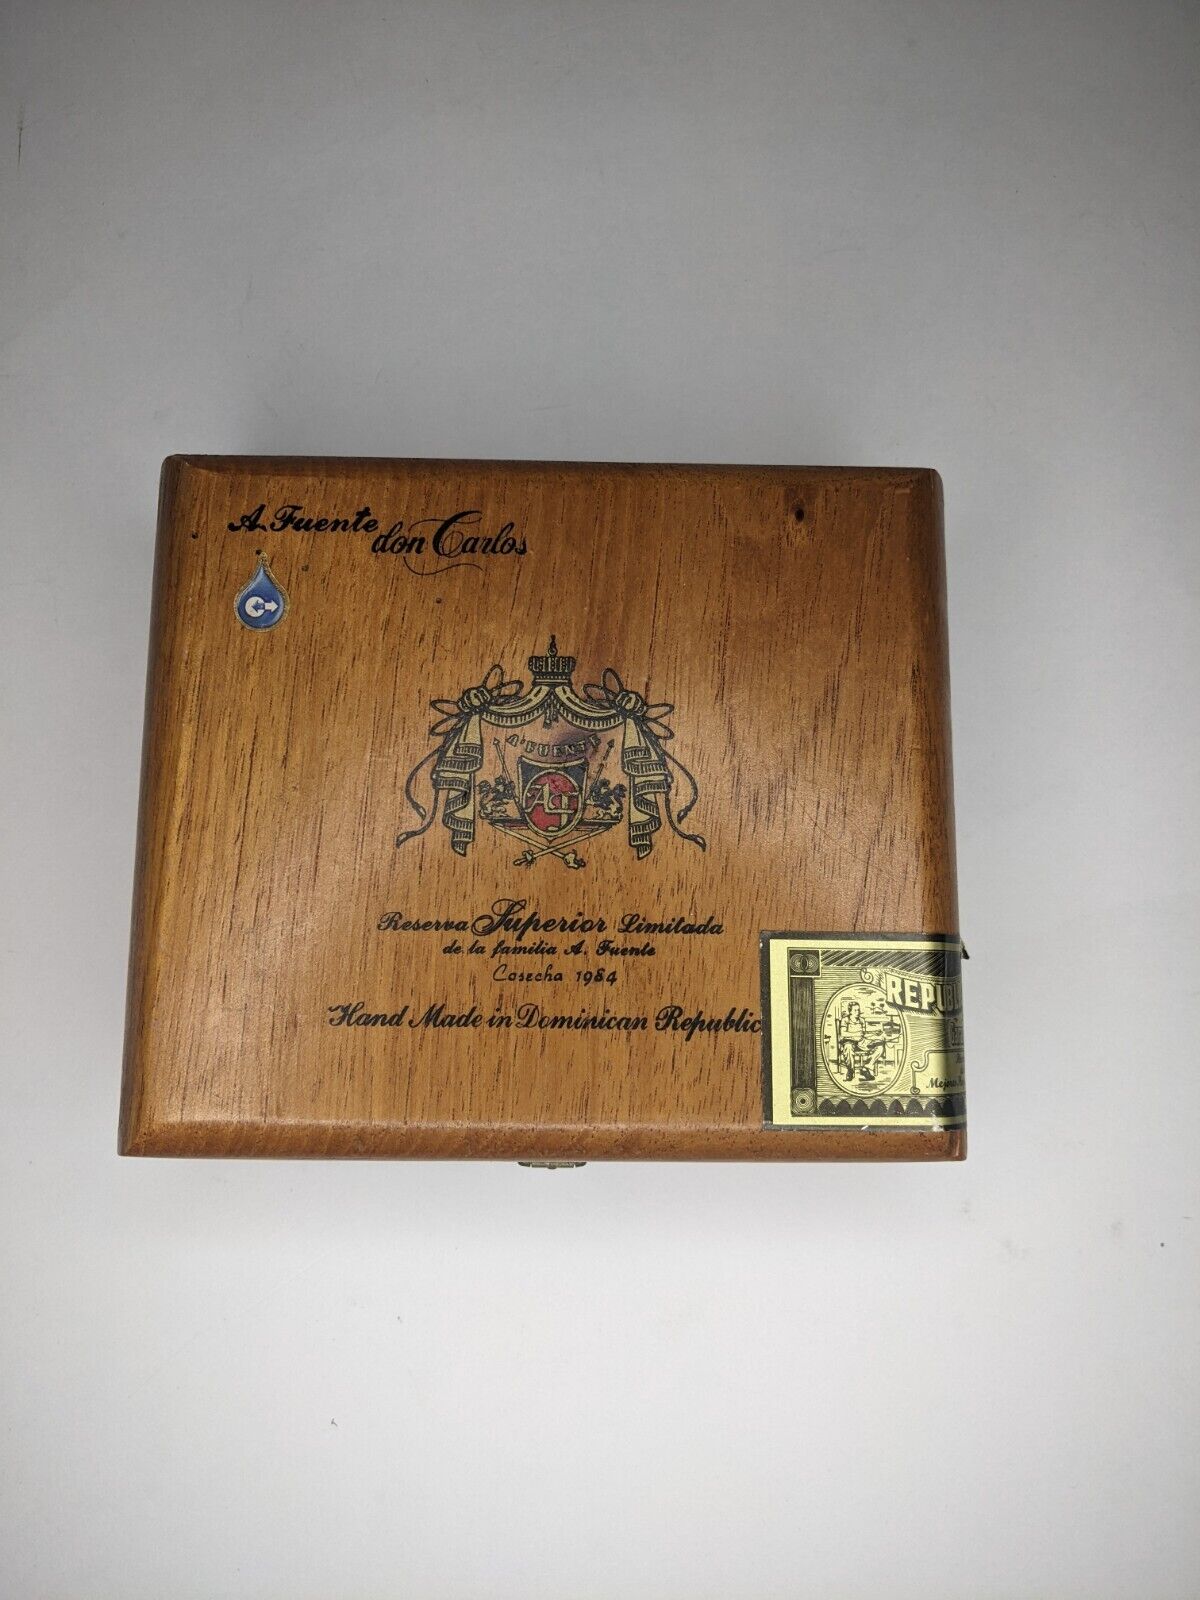 Cigar Box, A Fuentes Don Carlos Reserve Superior Limitada Cigar Box 1984